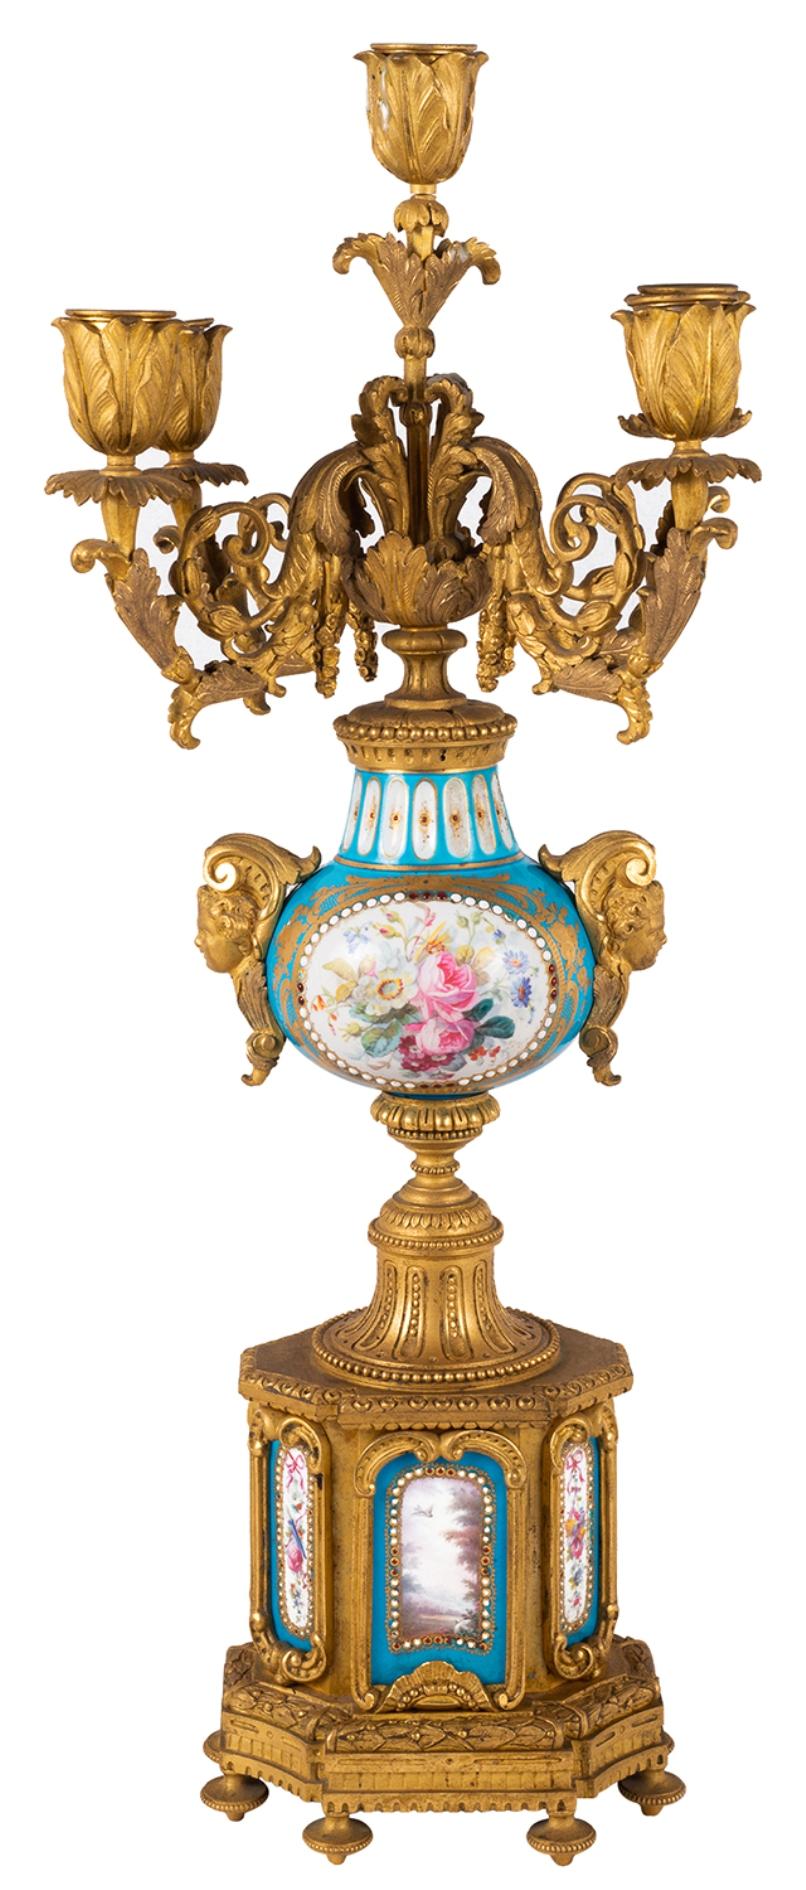 Paire de candélabres à cinq branches en porcelaine de Sèvres et bronze doré de la fin du XIXe siècle, avec un décor de feuillage, des urnes en porcelaine à fond turquoise au centre avec des scènes romantiques peintes à la main, des scènes florales